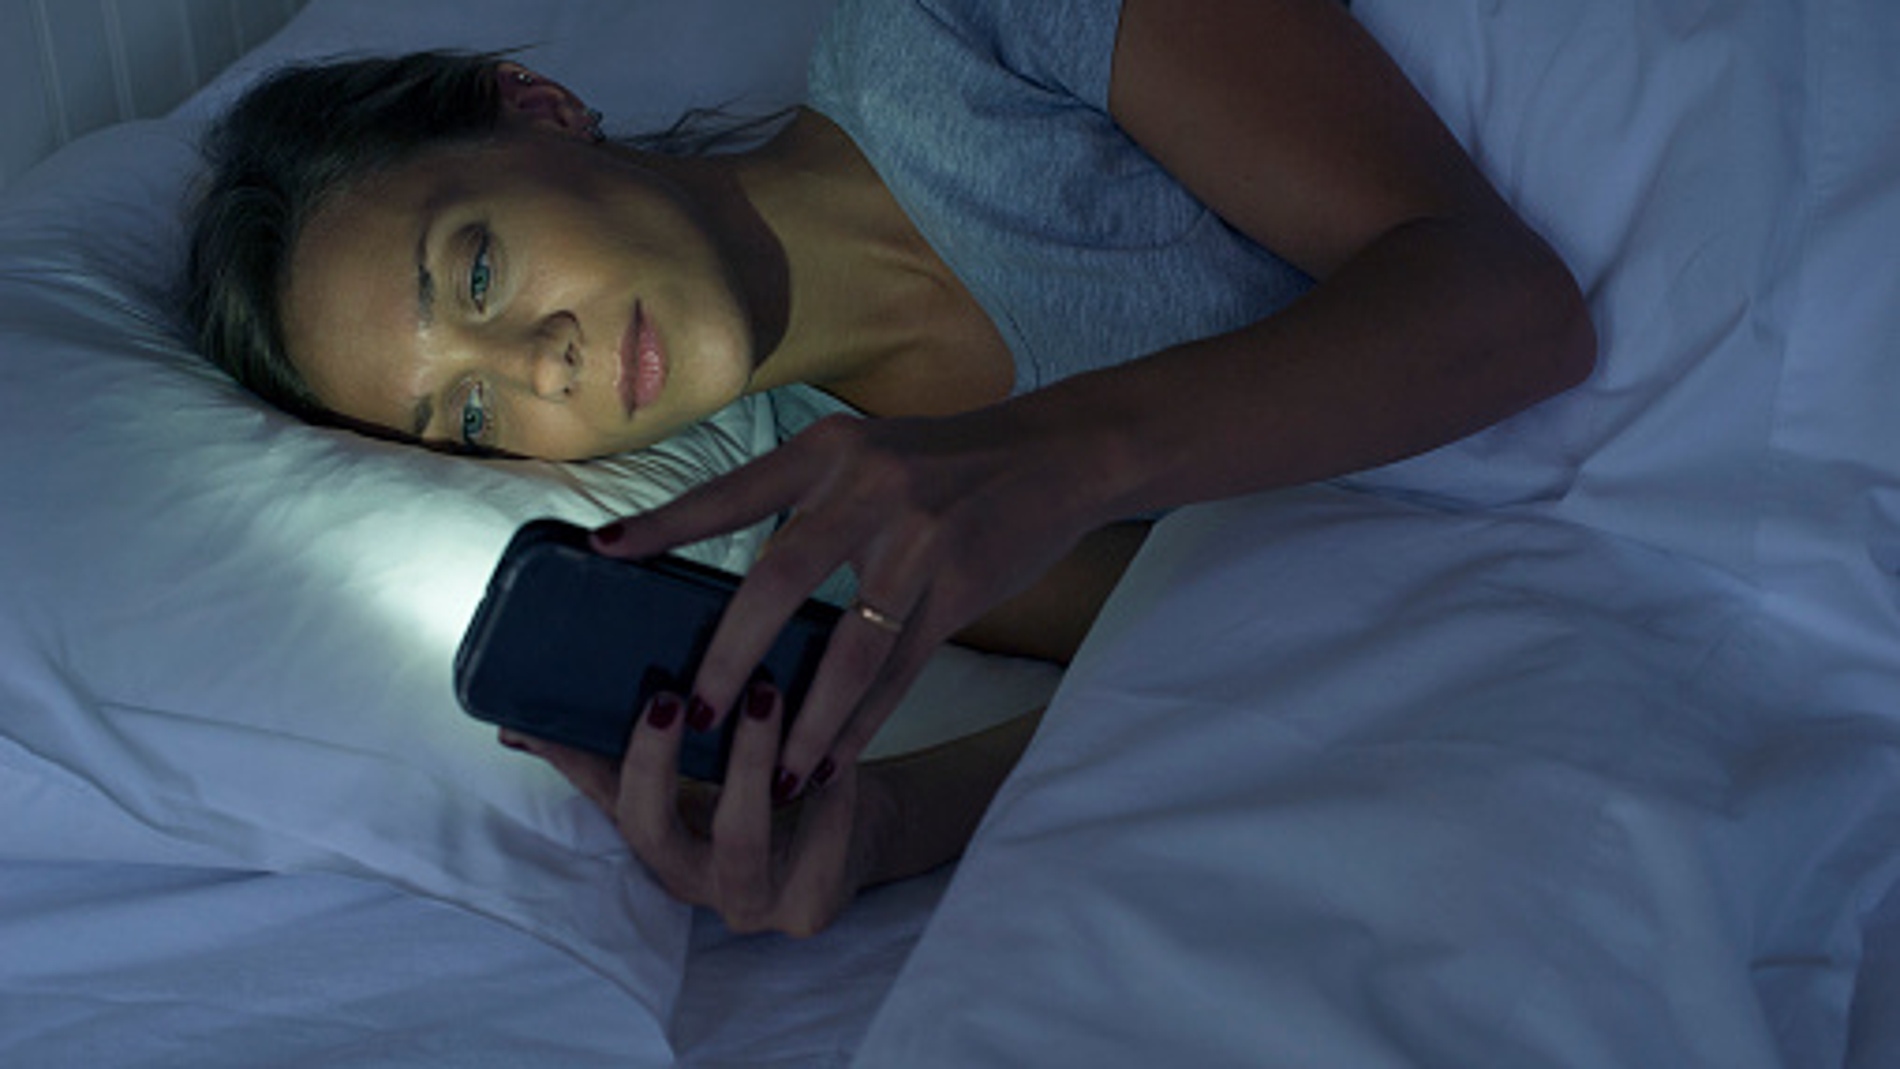 Una mujer mira el móvil antes de dormir